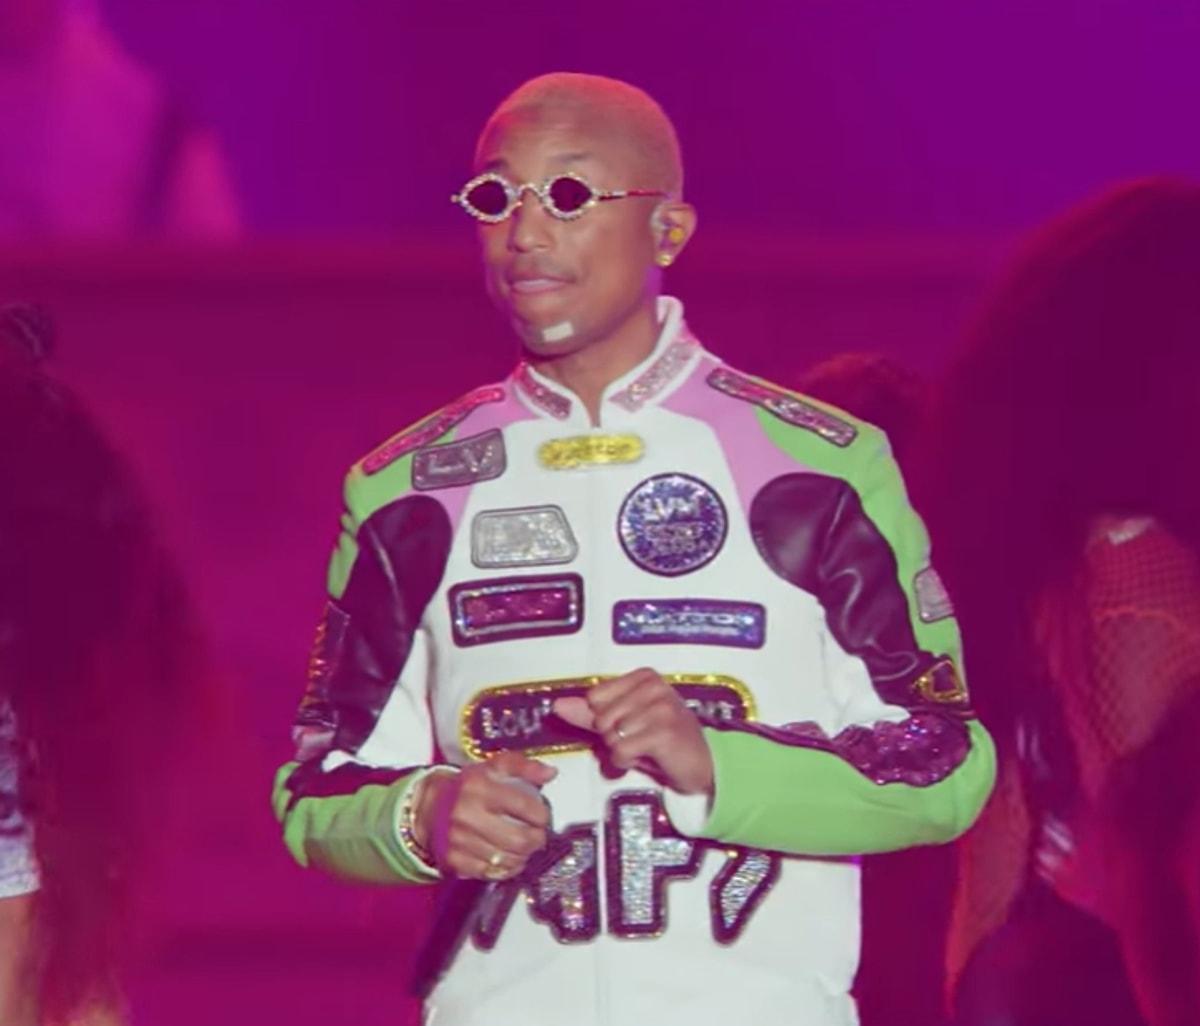 Formula 1 sonrası gerçekleşen konserde Pharrell, Alicia Keys ve Martin Garrix ile birlikte bu etkinlikte yer aldı.